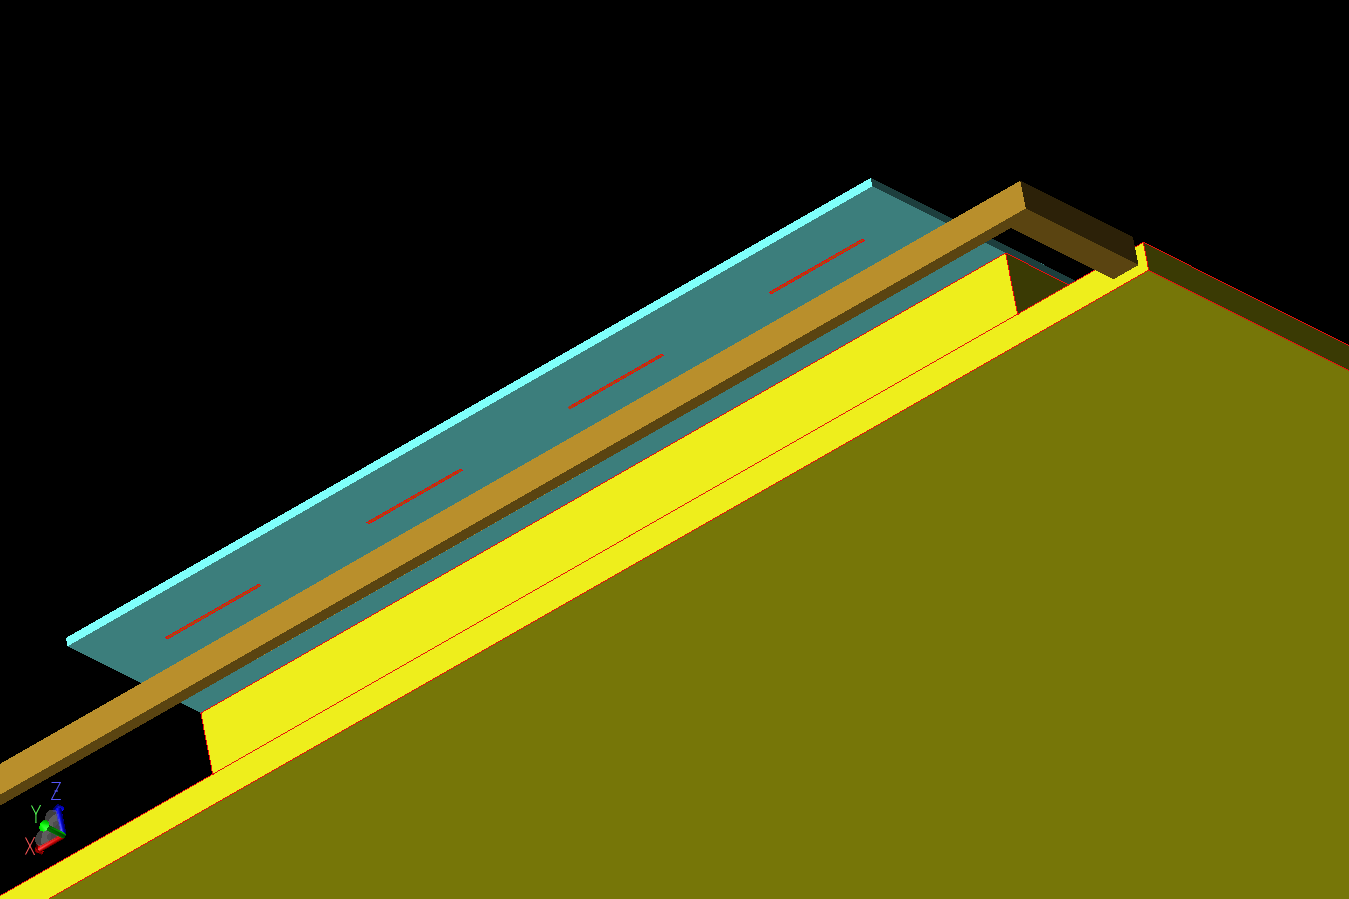 Abbildung 3: Eine Ansicht der Unterseite des Antennen-Arrays zeigt die Trennung der 4G- und 5G-Elemente und die Rückseite des Substrats.